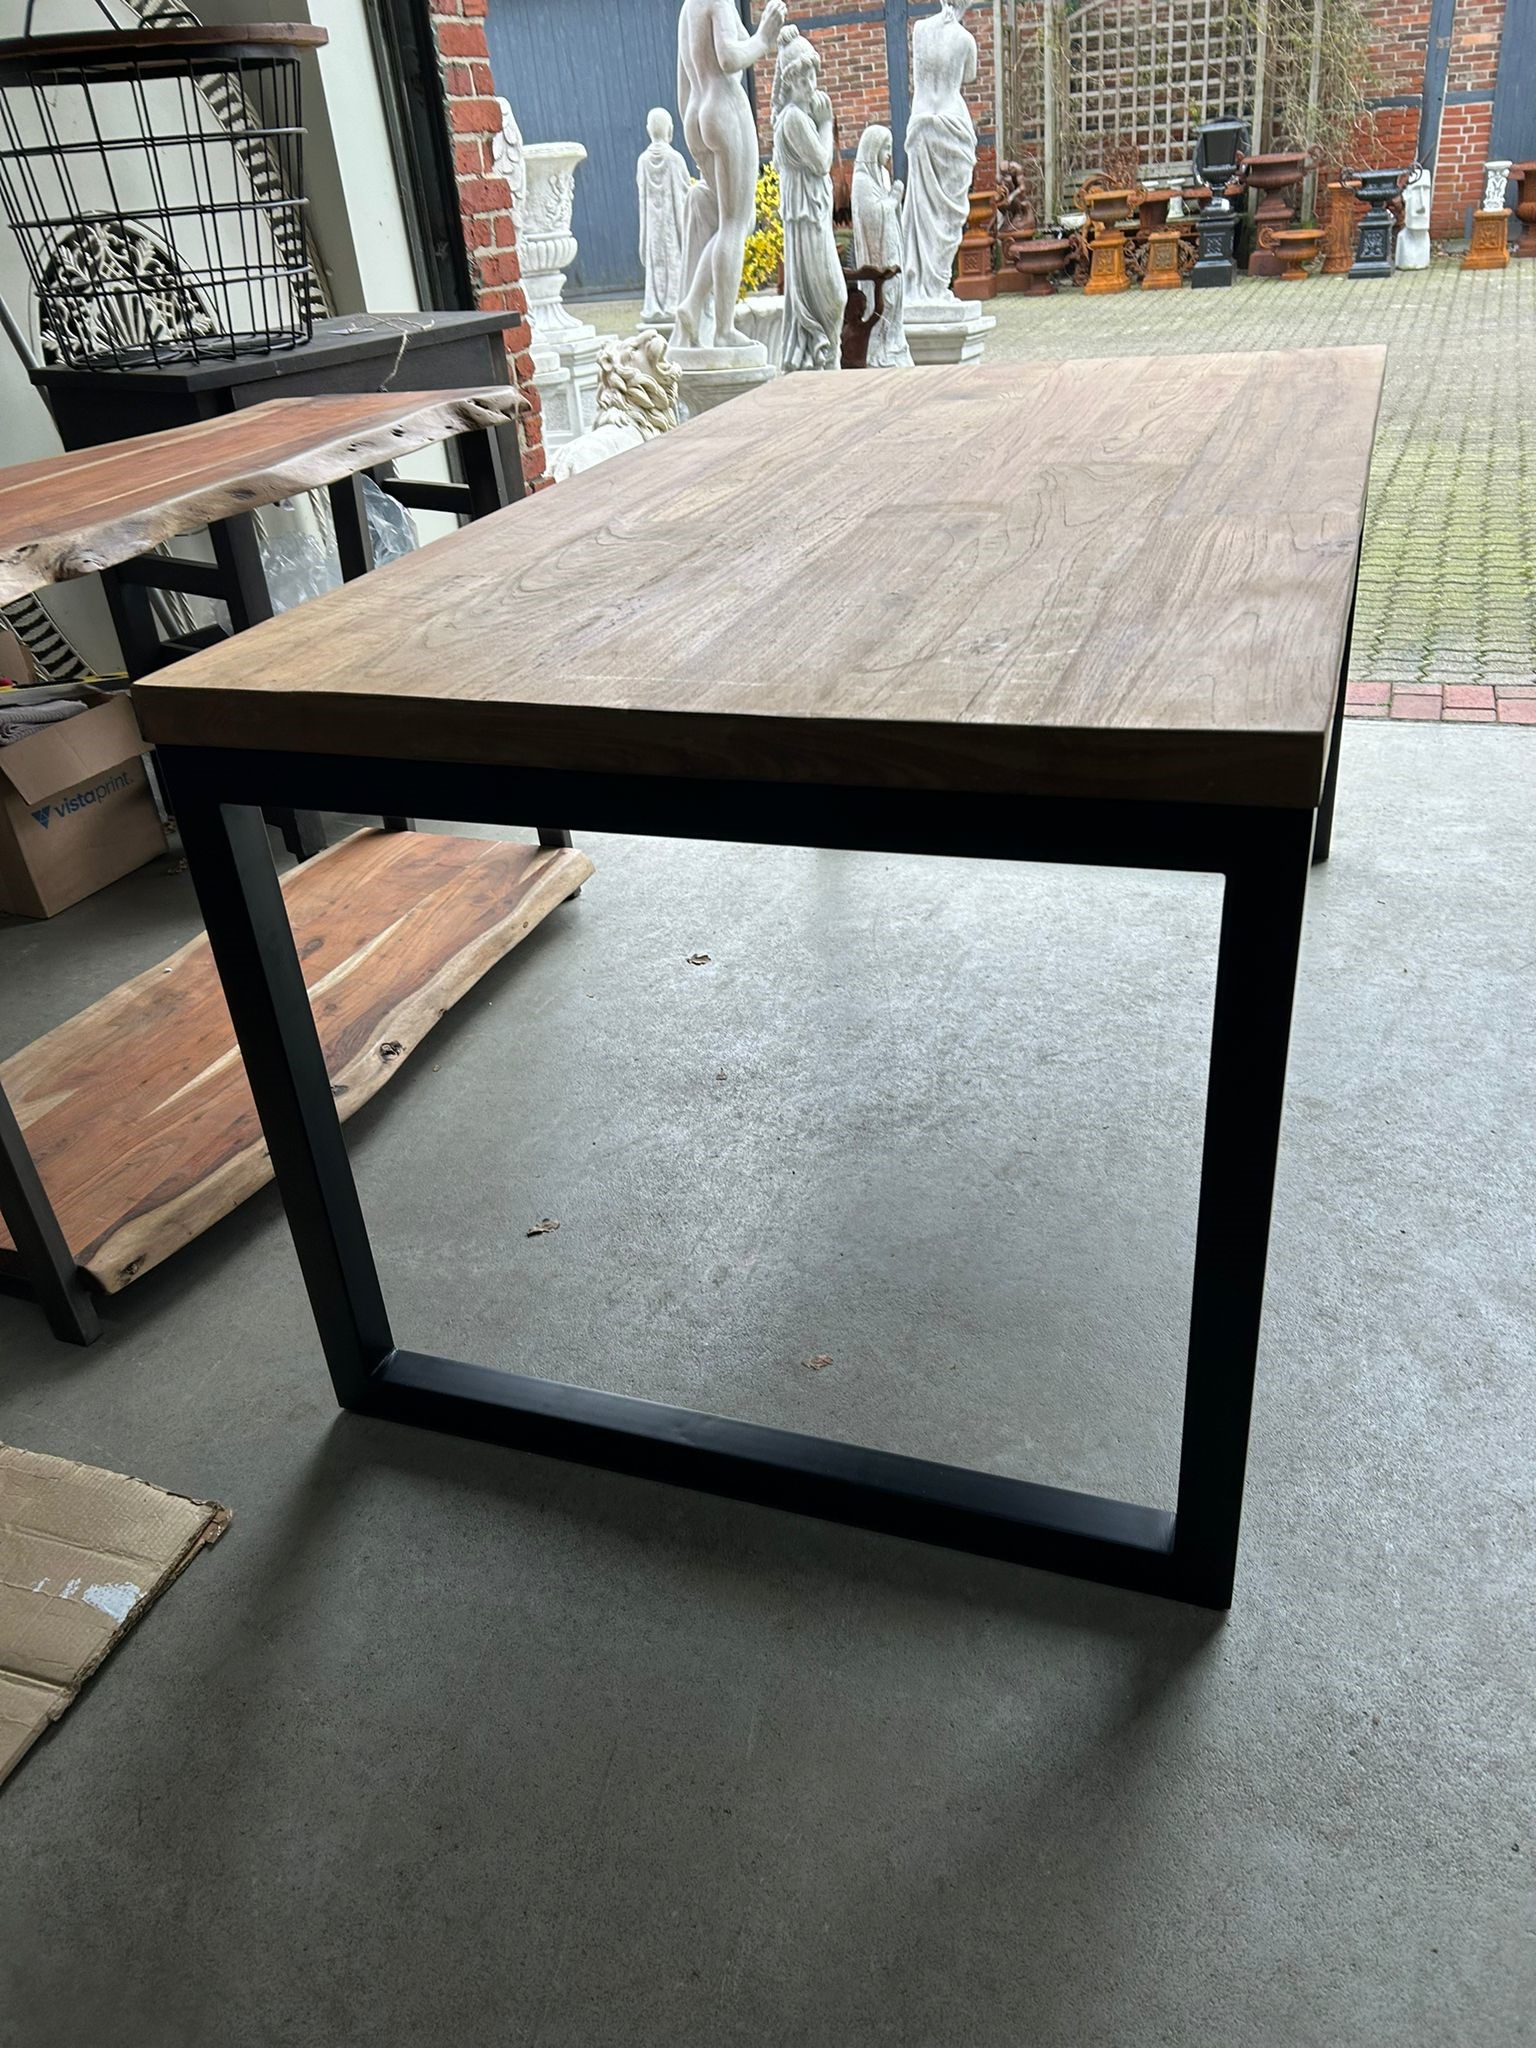 Industrial table - wood - black metal frame  - 160 x 90 cm